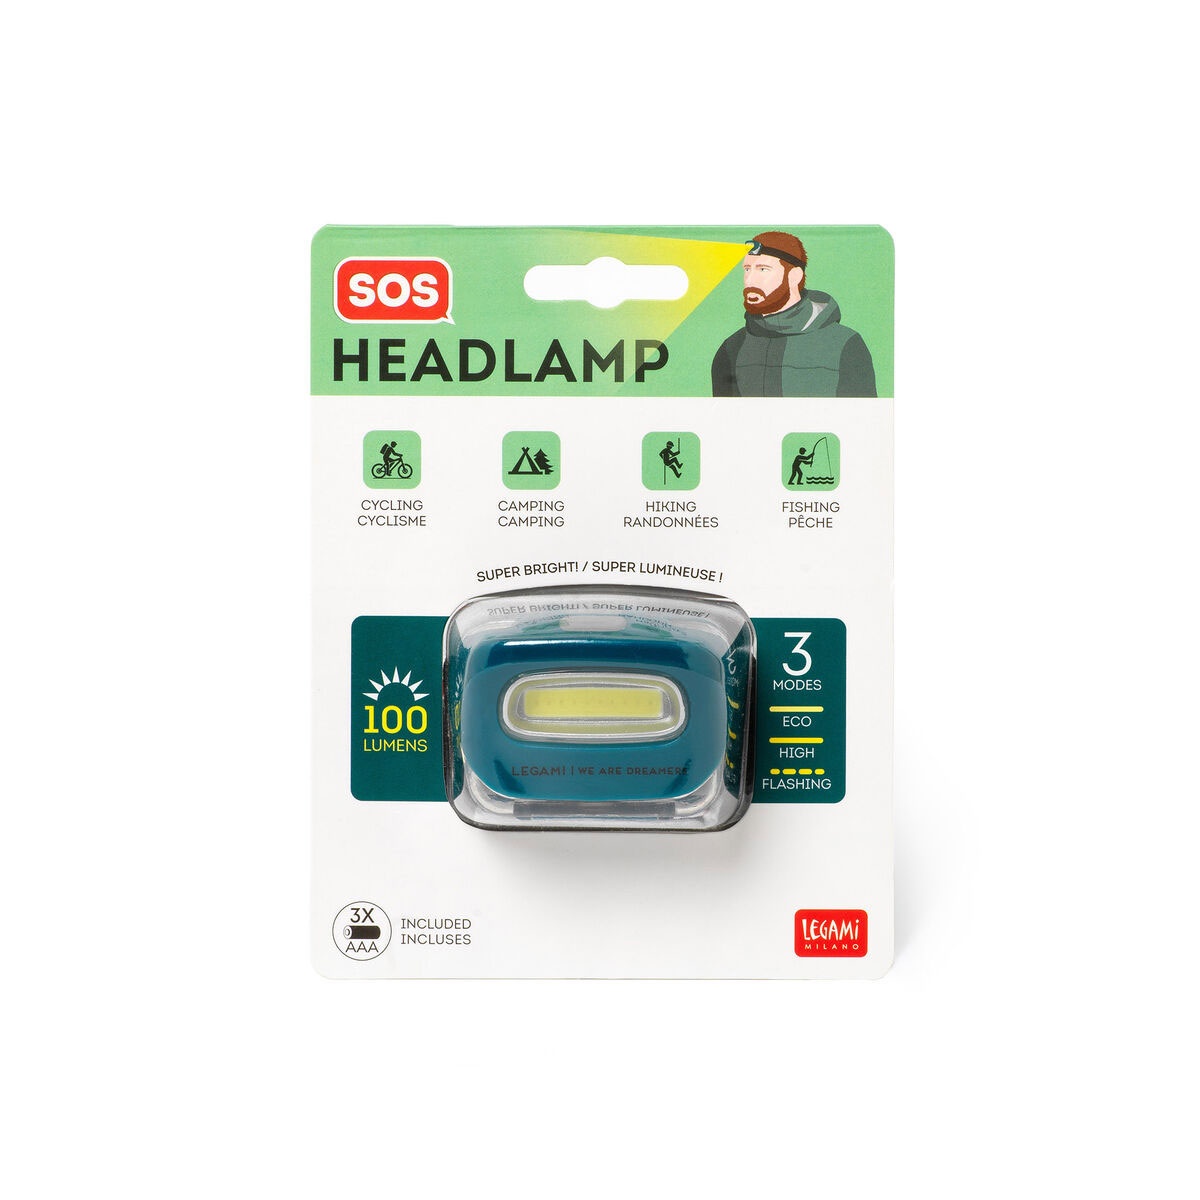 Stirnlampe mit COB-LED - SOS Headlamp von Legami